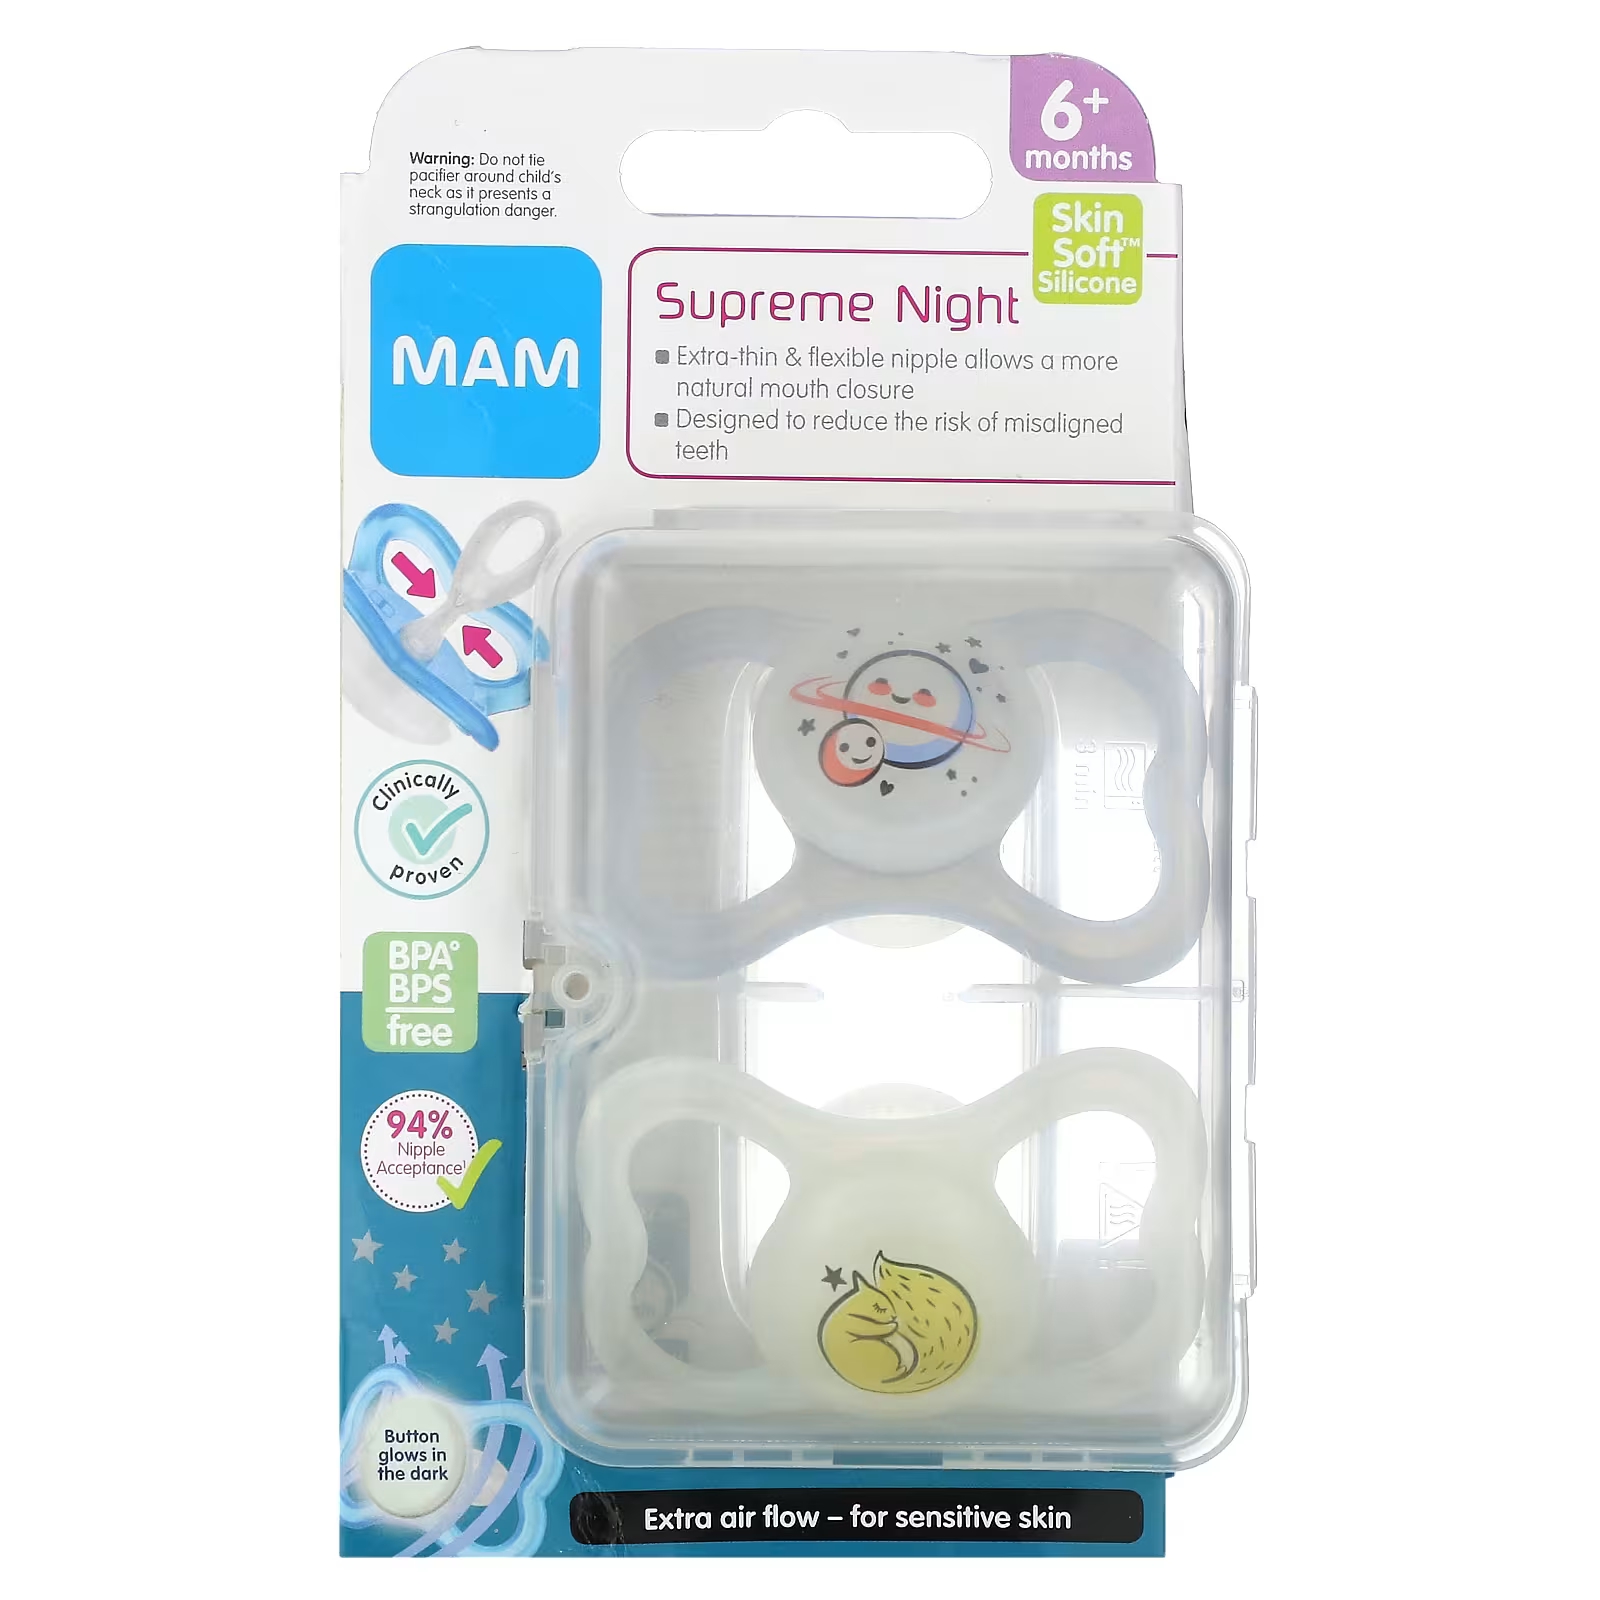 Соска-пустышка MAM Supreme Night для детей от 6 месяцев